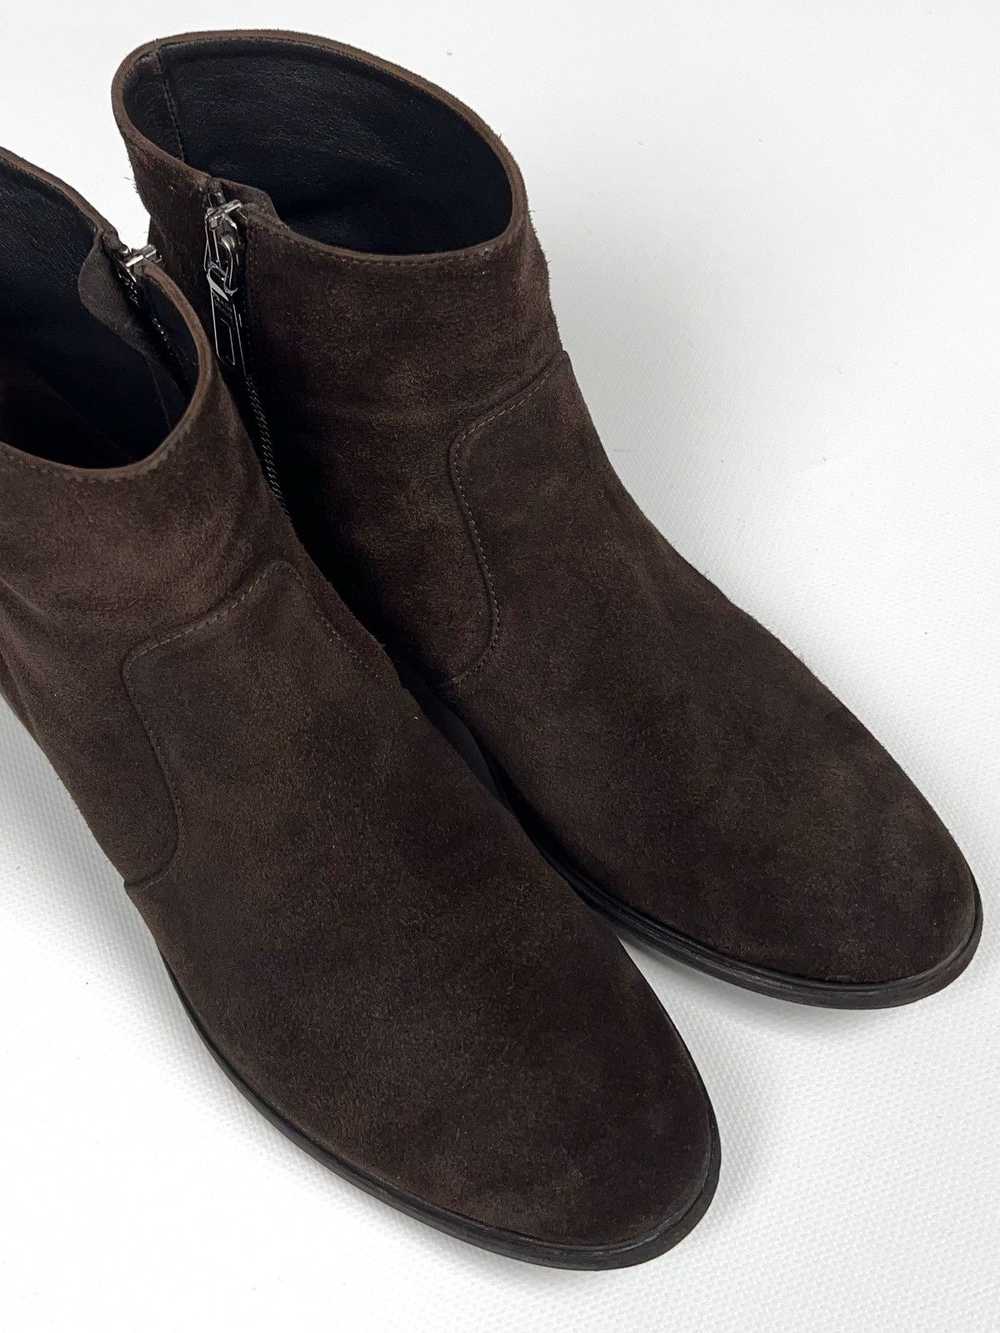 Prada Prada Brown Suede Zip Western Boots Vintage - image 9